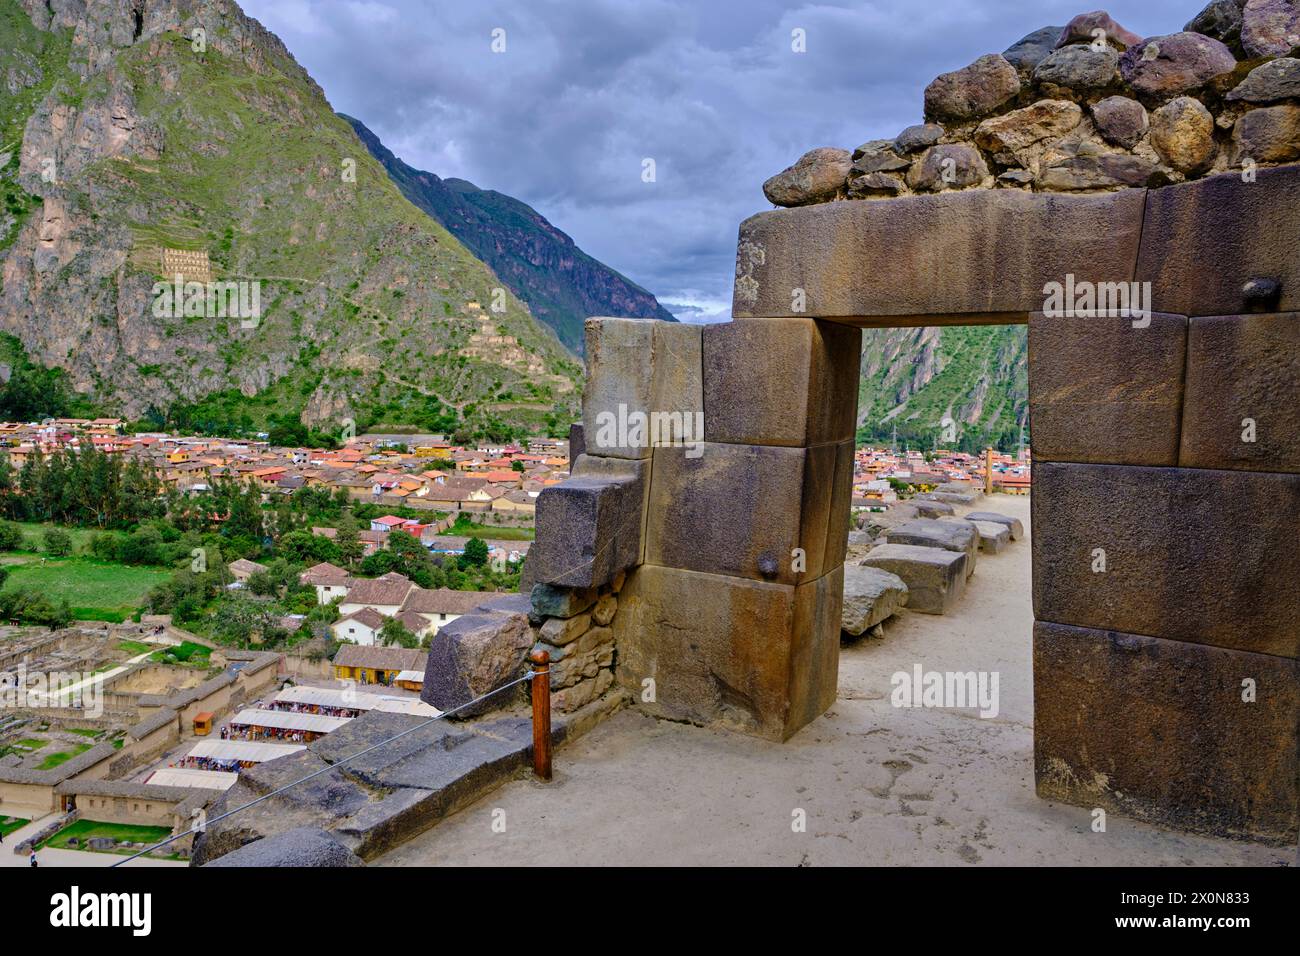 Pérou, province de Cuzco, la vallée sacrée des Incas, Ollantaytambo, le site archéologique inca d'Ollantaytambo Banque D'Images